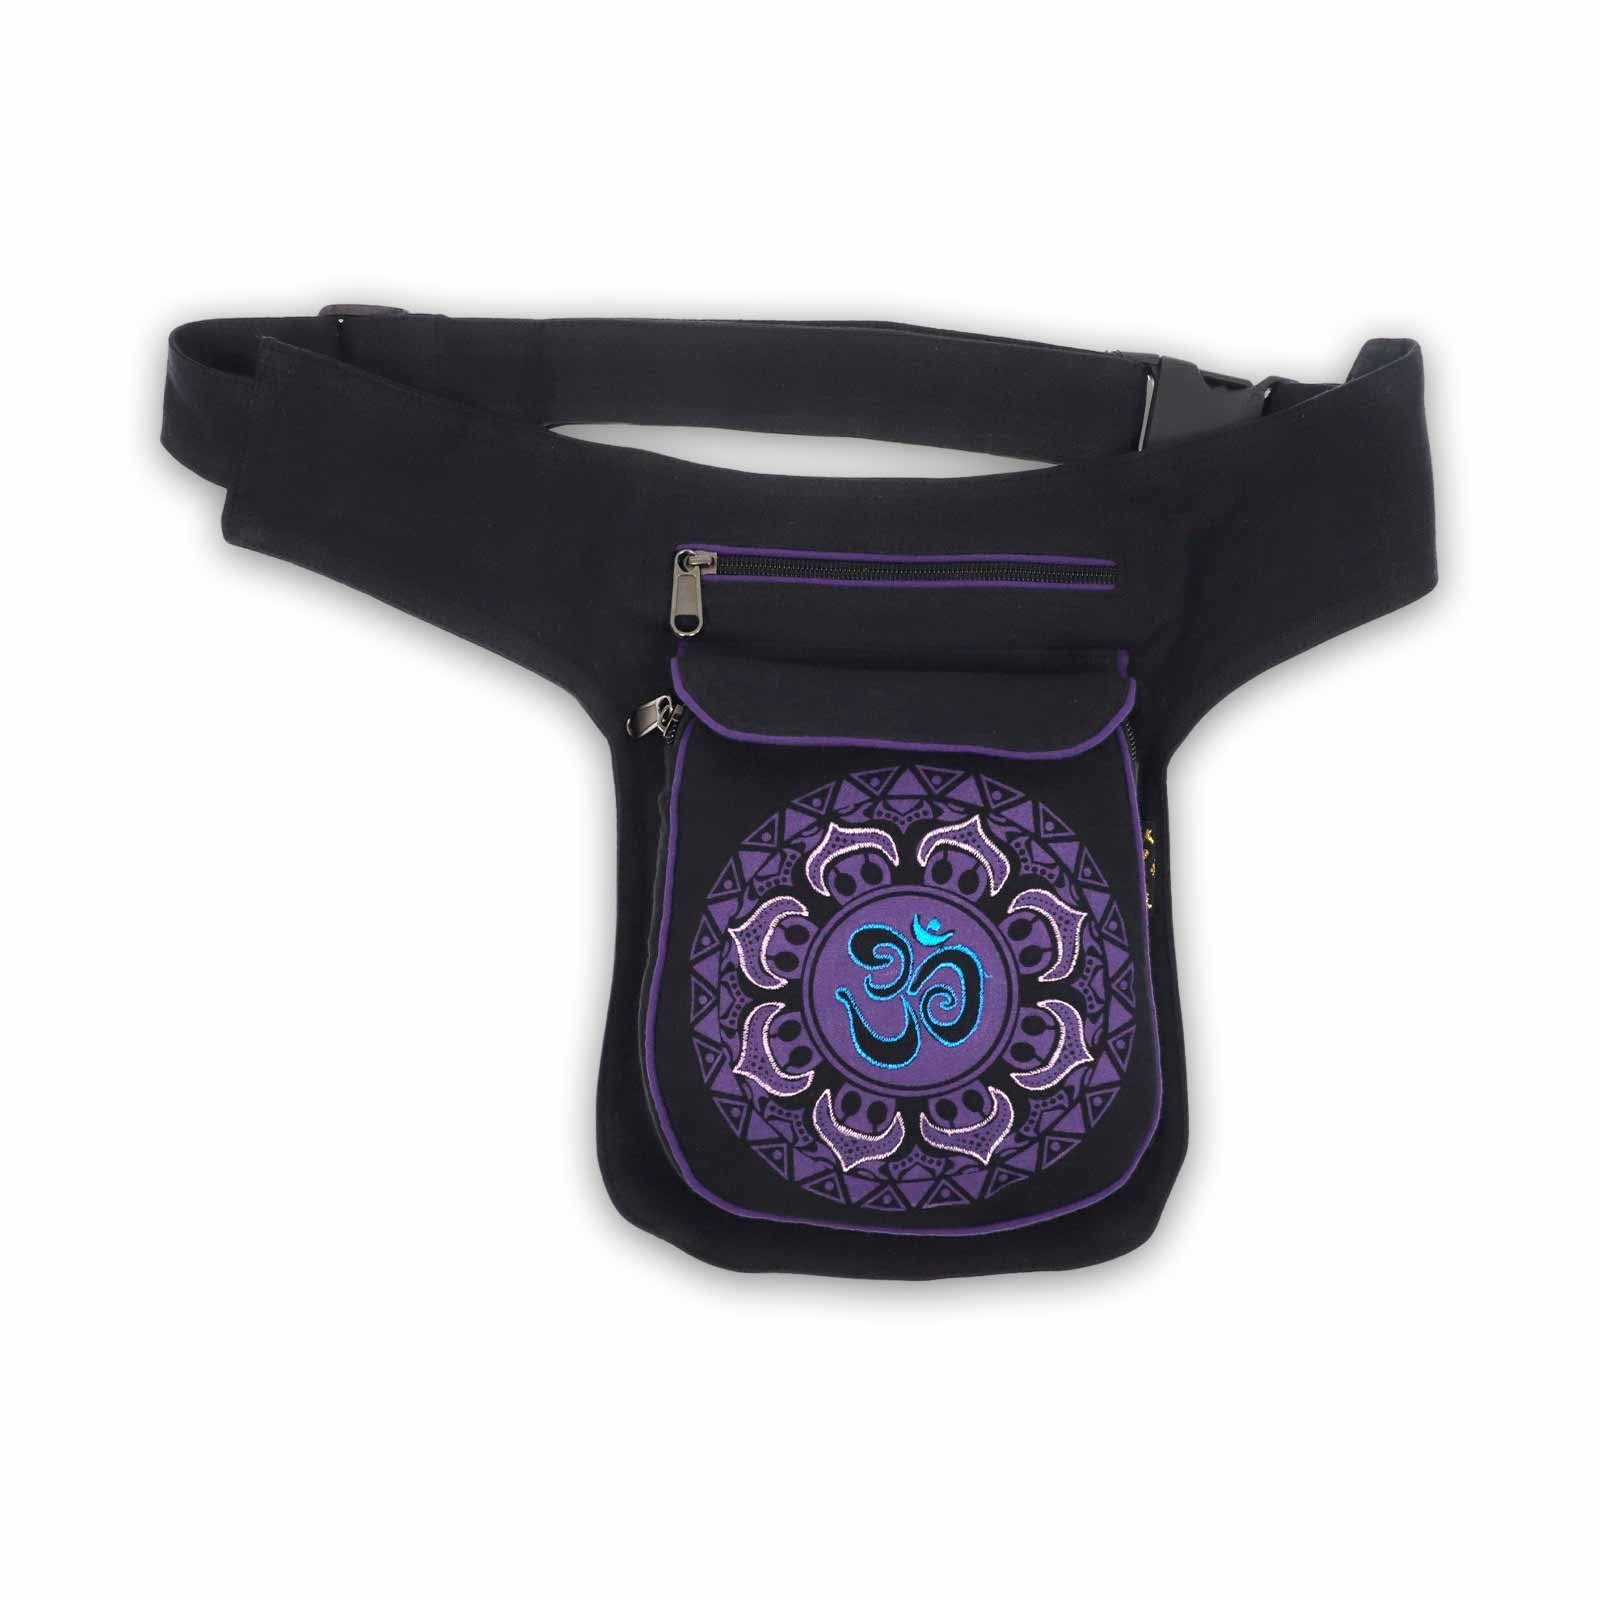 KUNST UND MAGIE Bauchtasche OM Gürteltasche Sidebag Hüfttasche Mandala Purple Black Bauchtasche Mandala